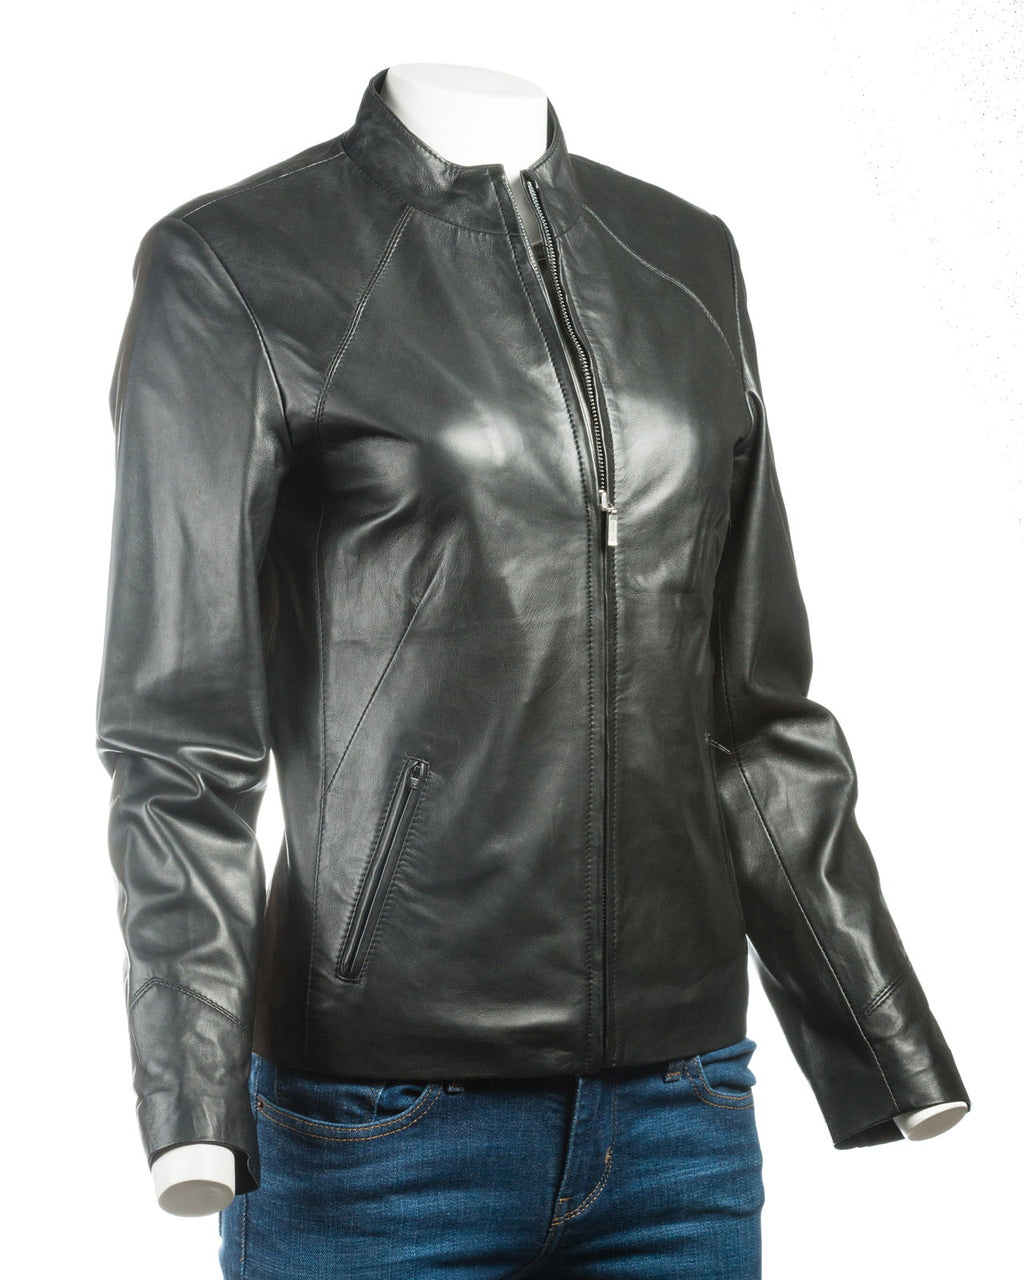 Ladies Black Plain Short Zipped Leather Jacket: Angelina